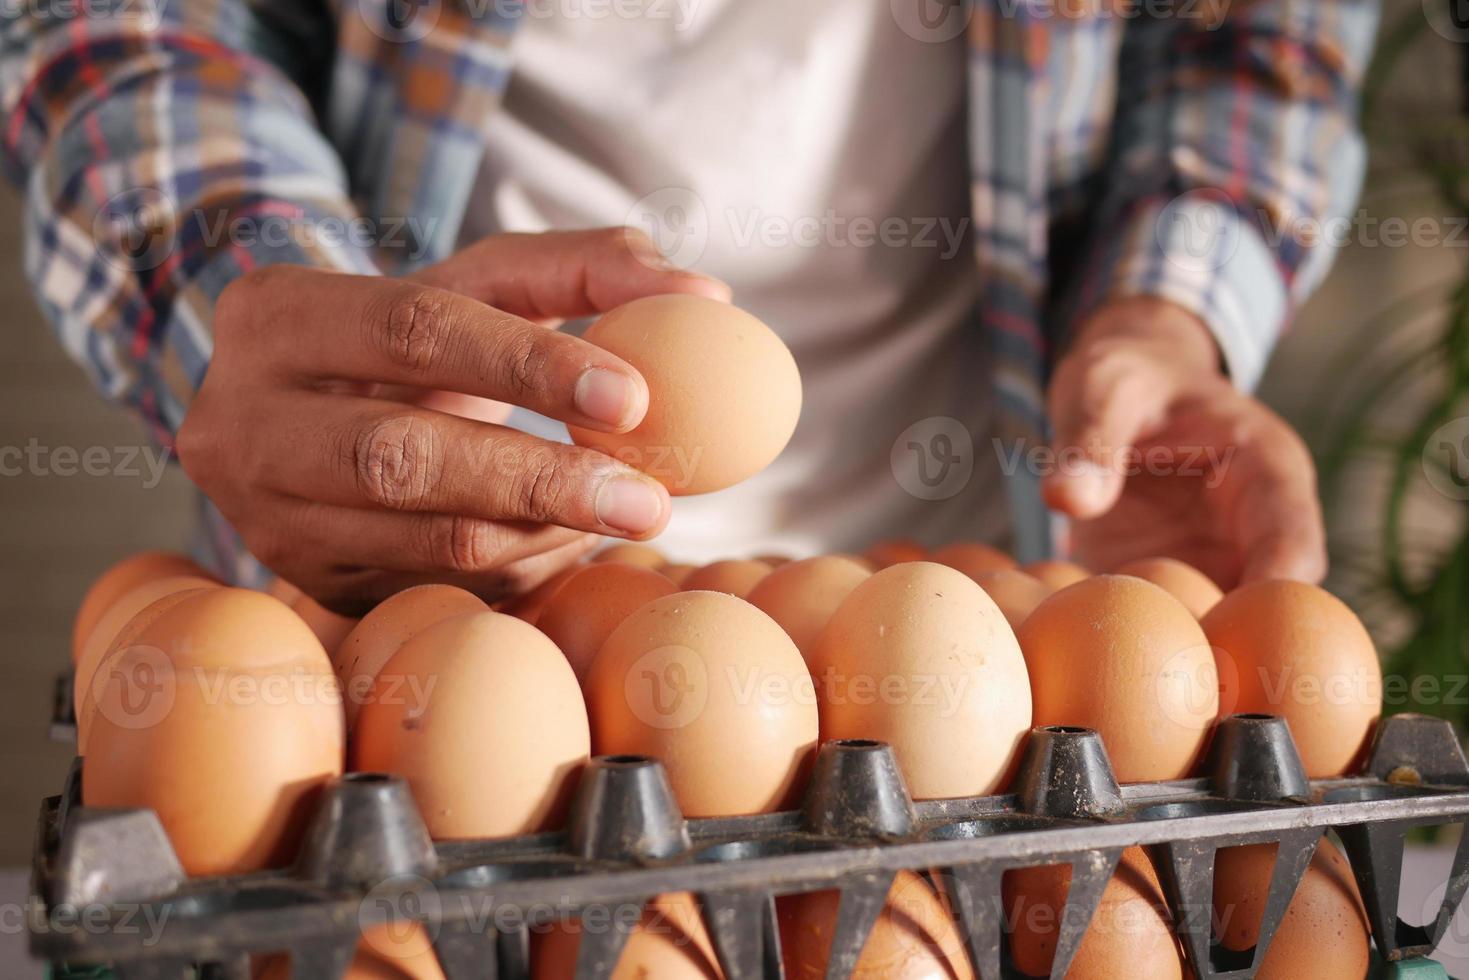 raccogliere a mano le uova da una custodia di plastica sul tavolo foto